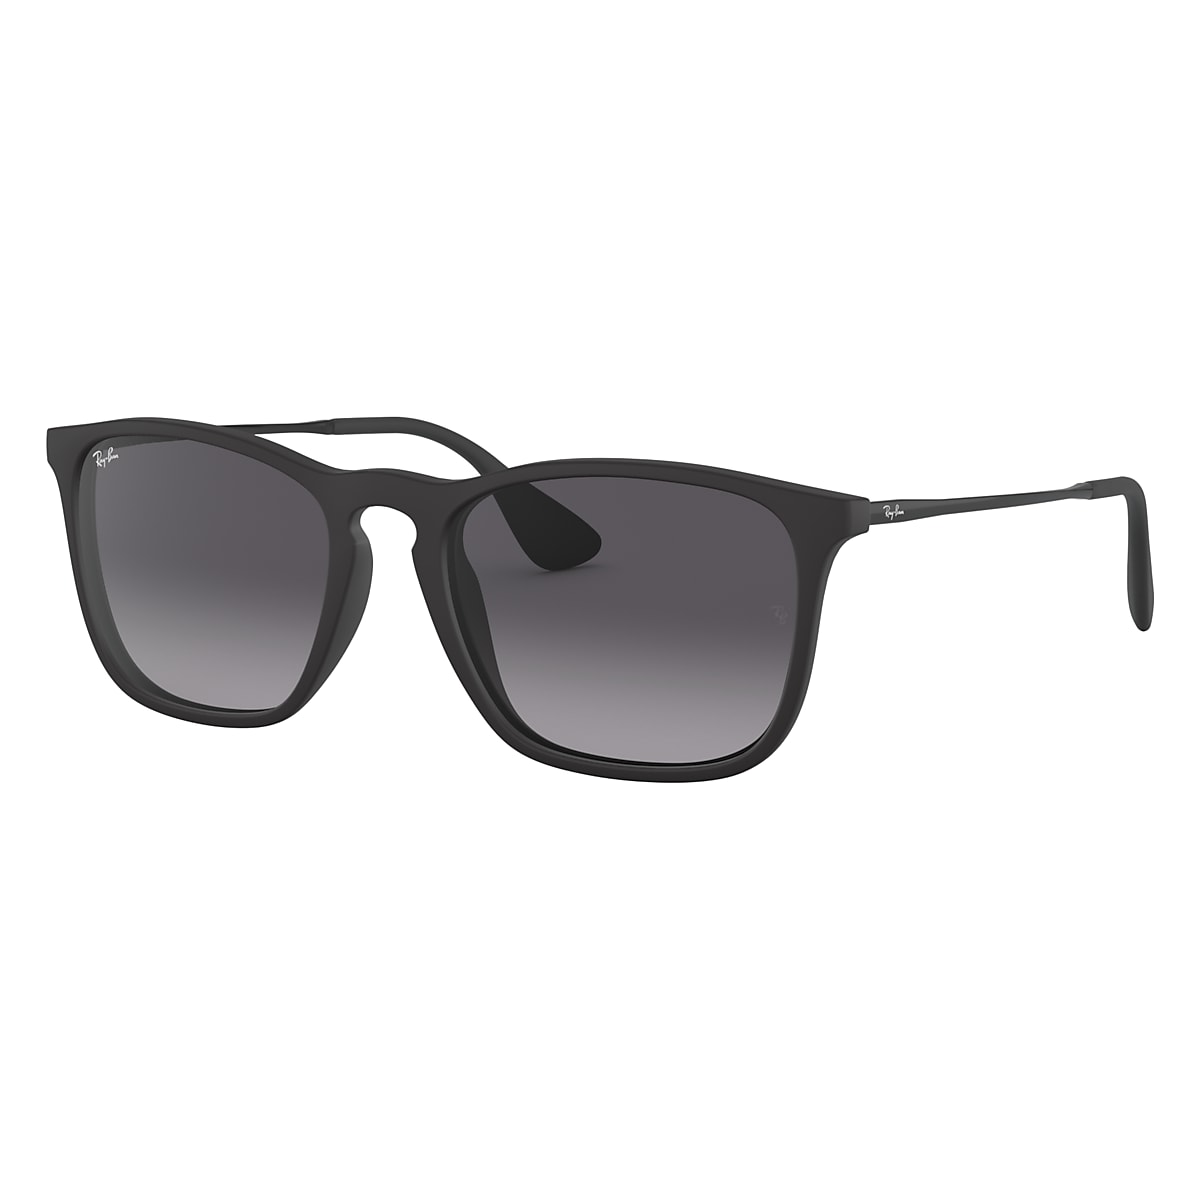 Permanent verdrievoudigen verzending Chris Sunglasses in Black and Grey - RB4187 | Ray-Ban® US